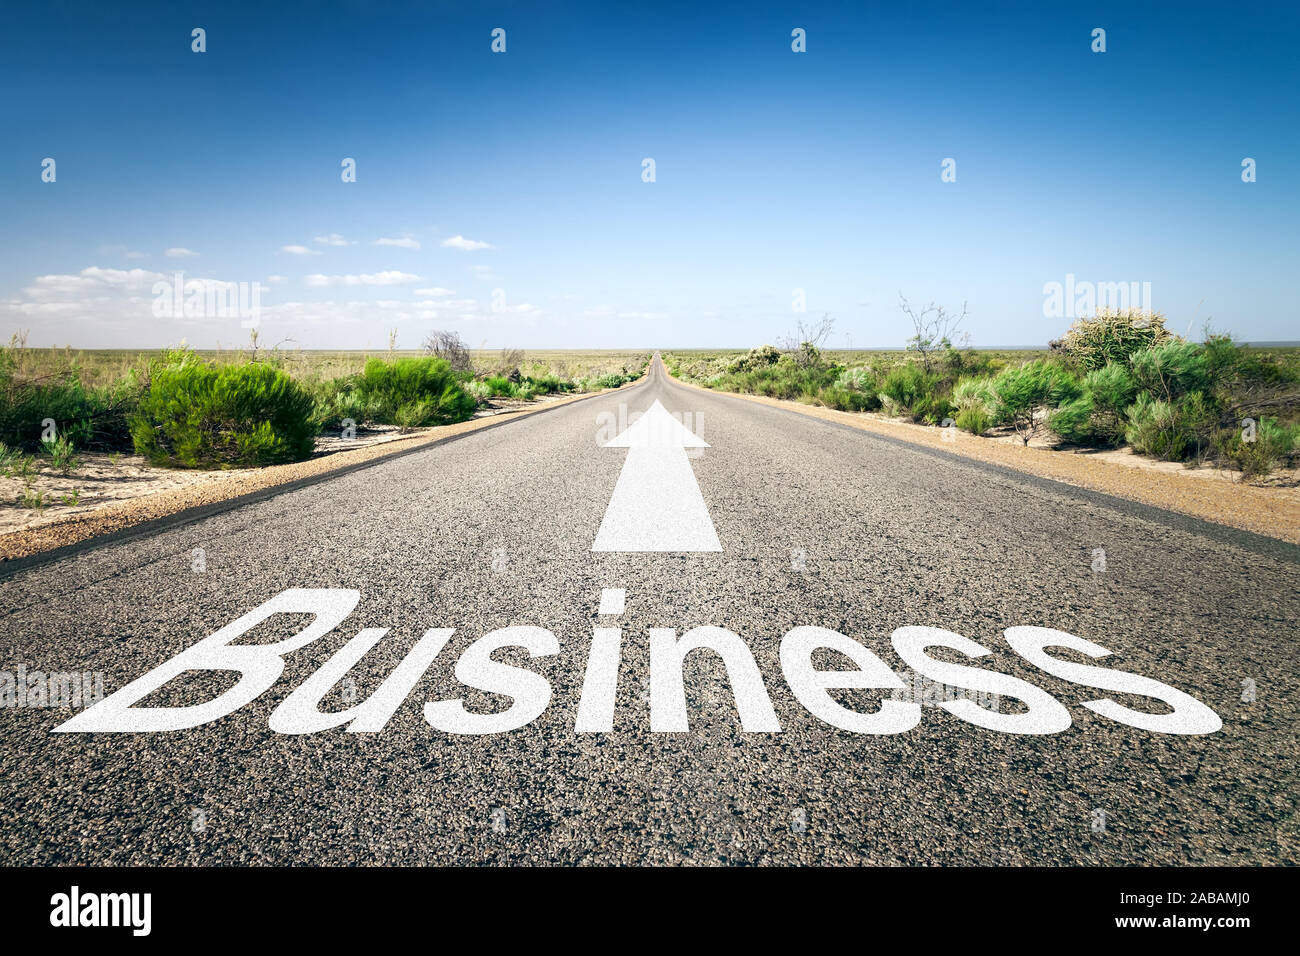 Eine unendlich lange Strasse mit der wegweisenden Aufschrift: "Business" Stock Photo